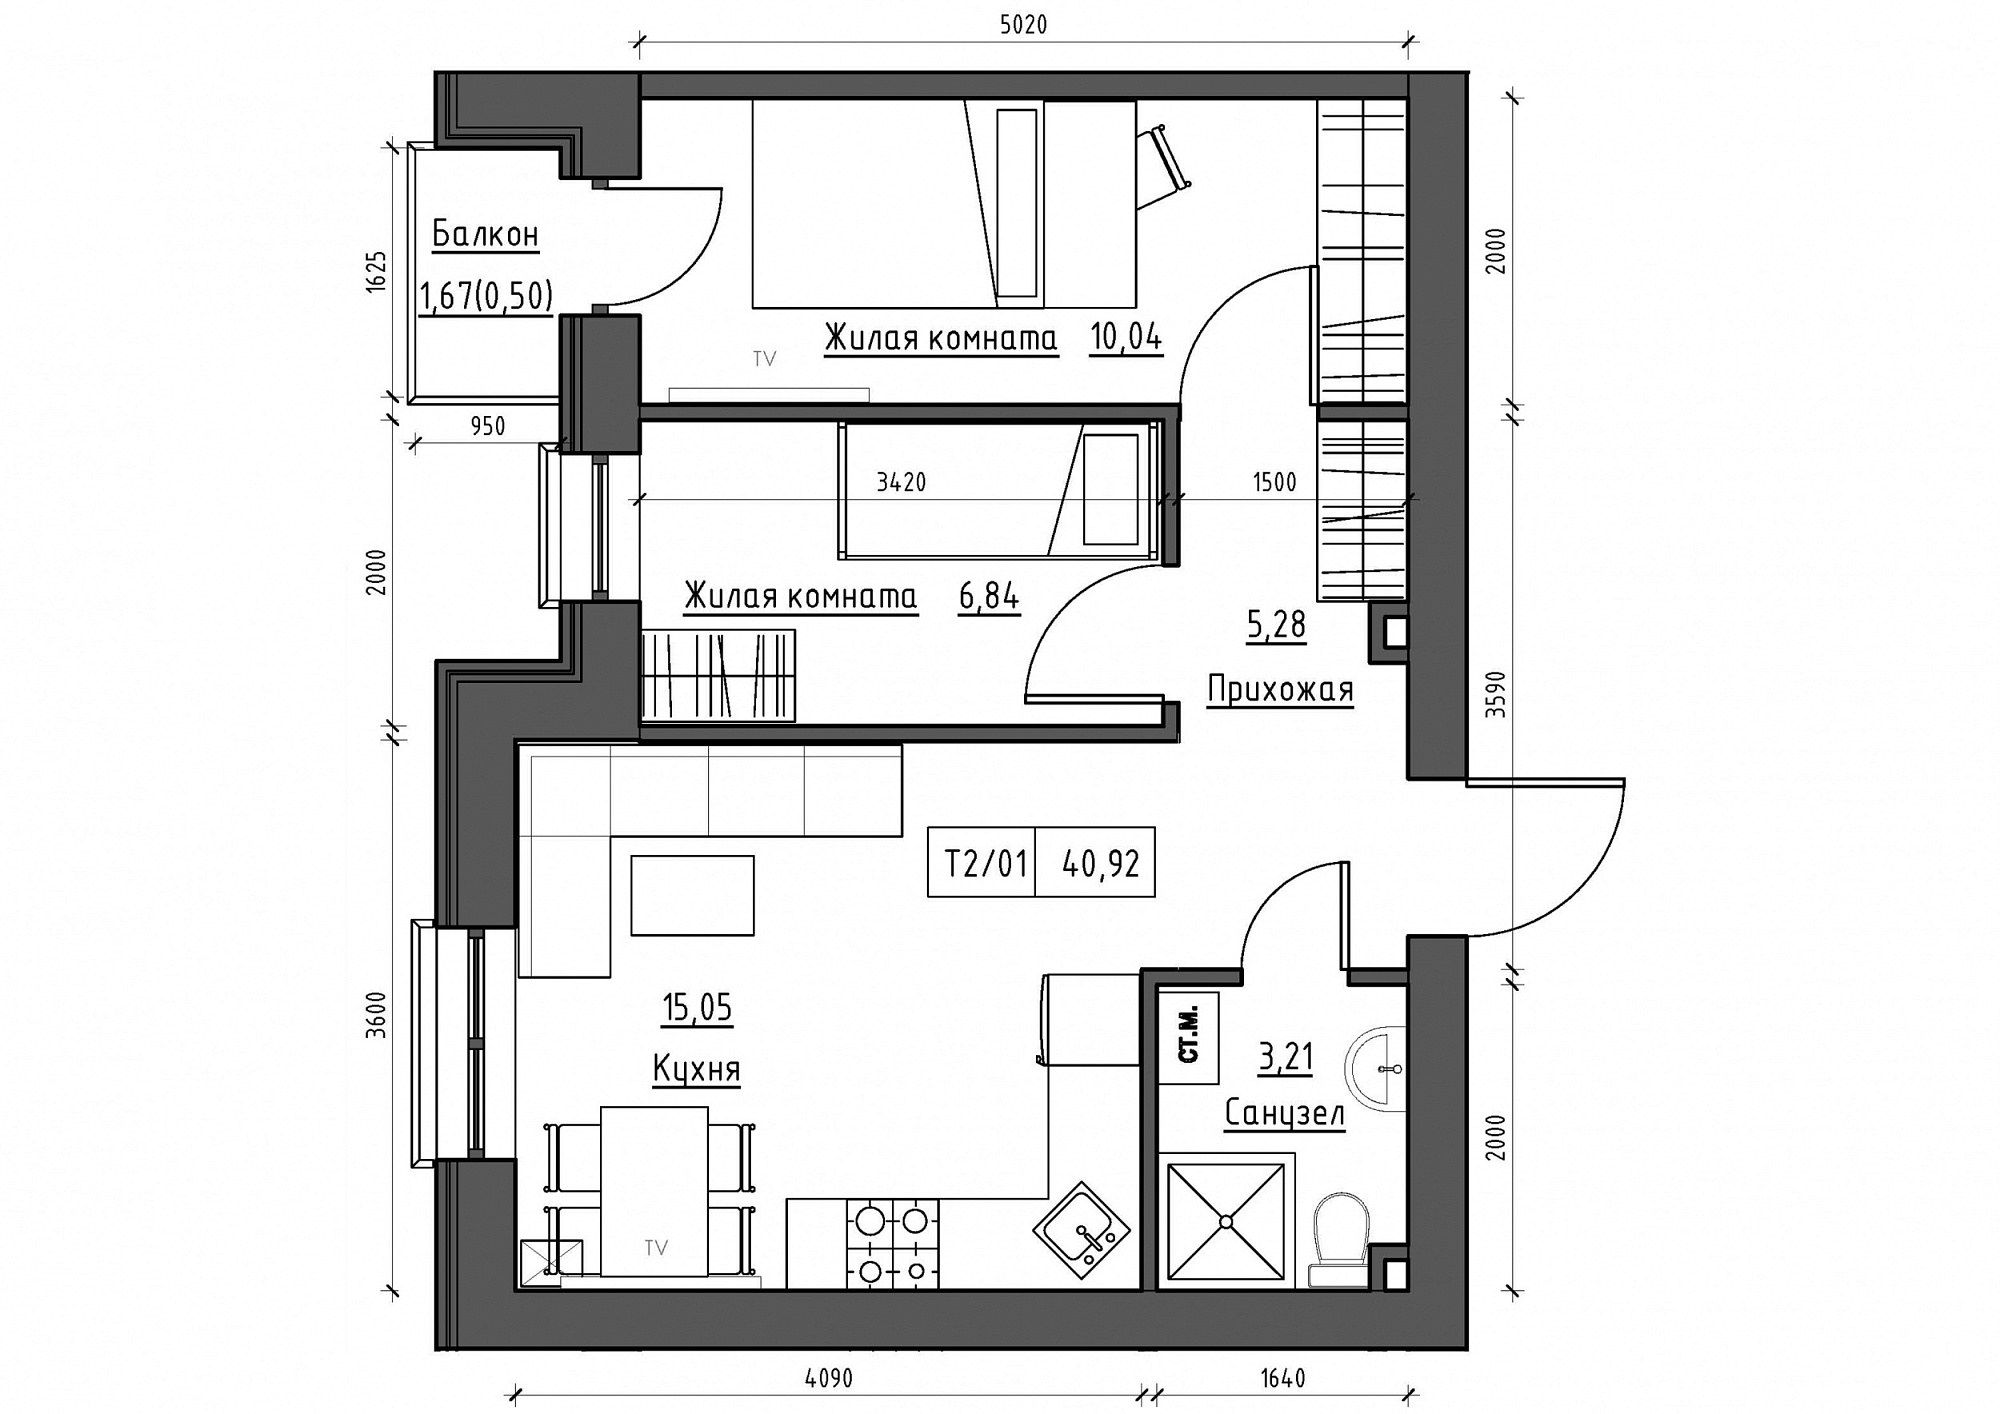 Планування 2-к квартира площею 40.92м2, KS-012-02/0010.